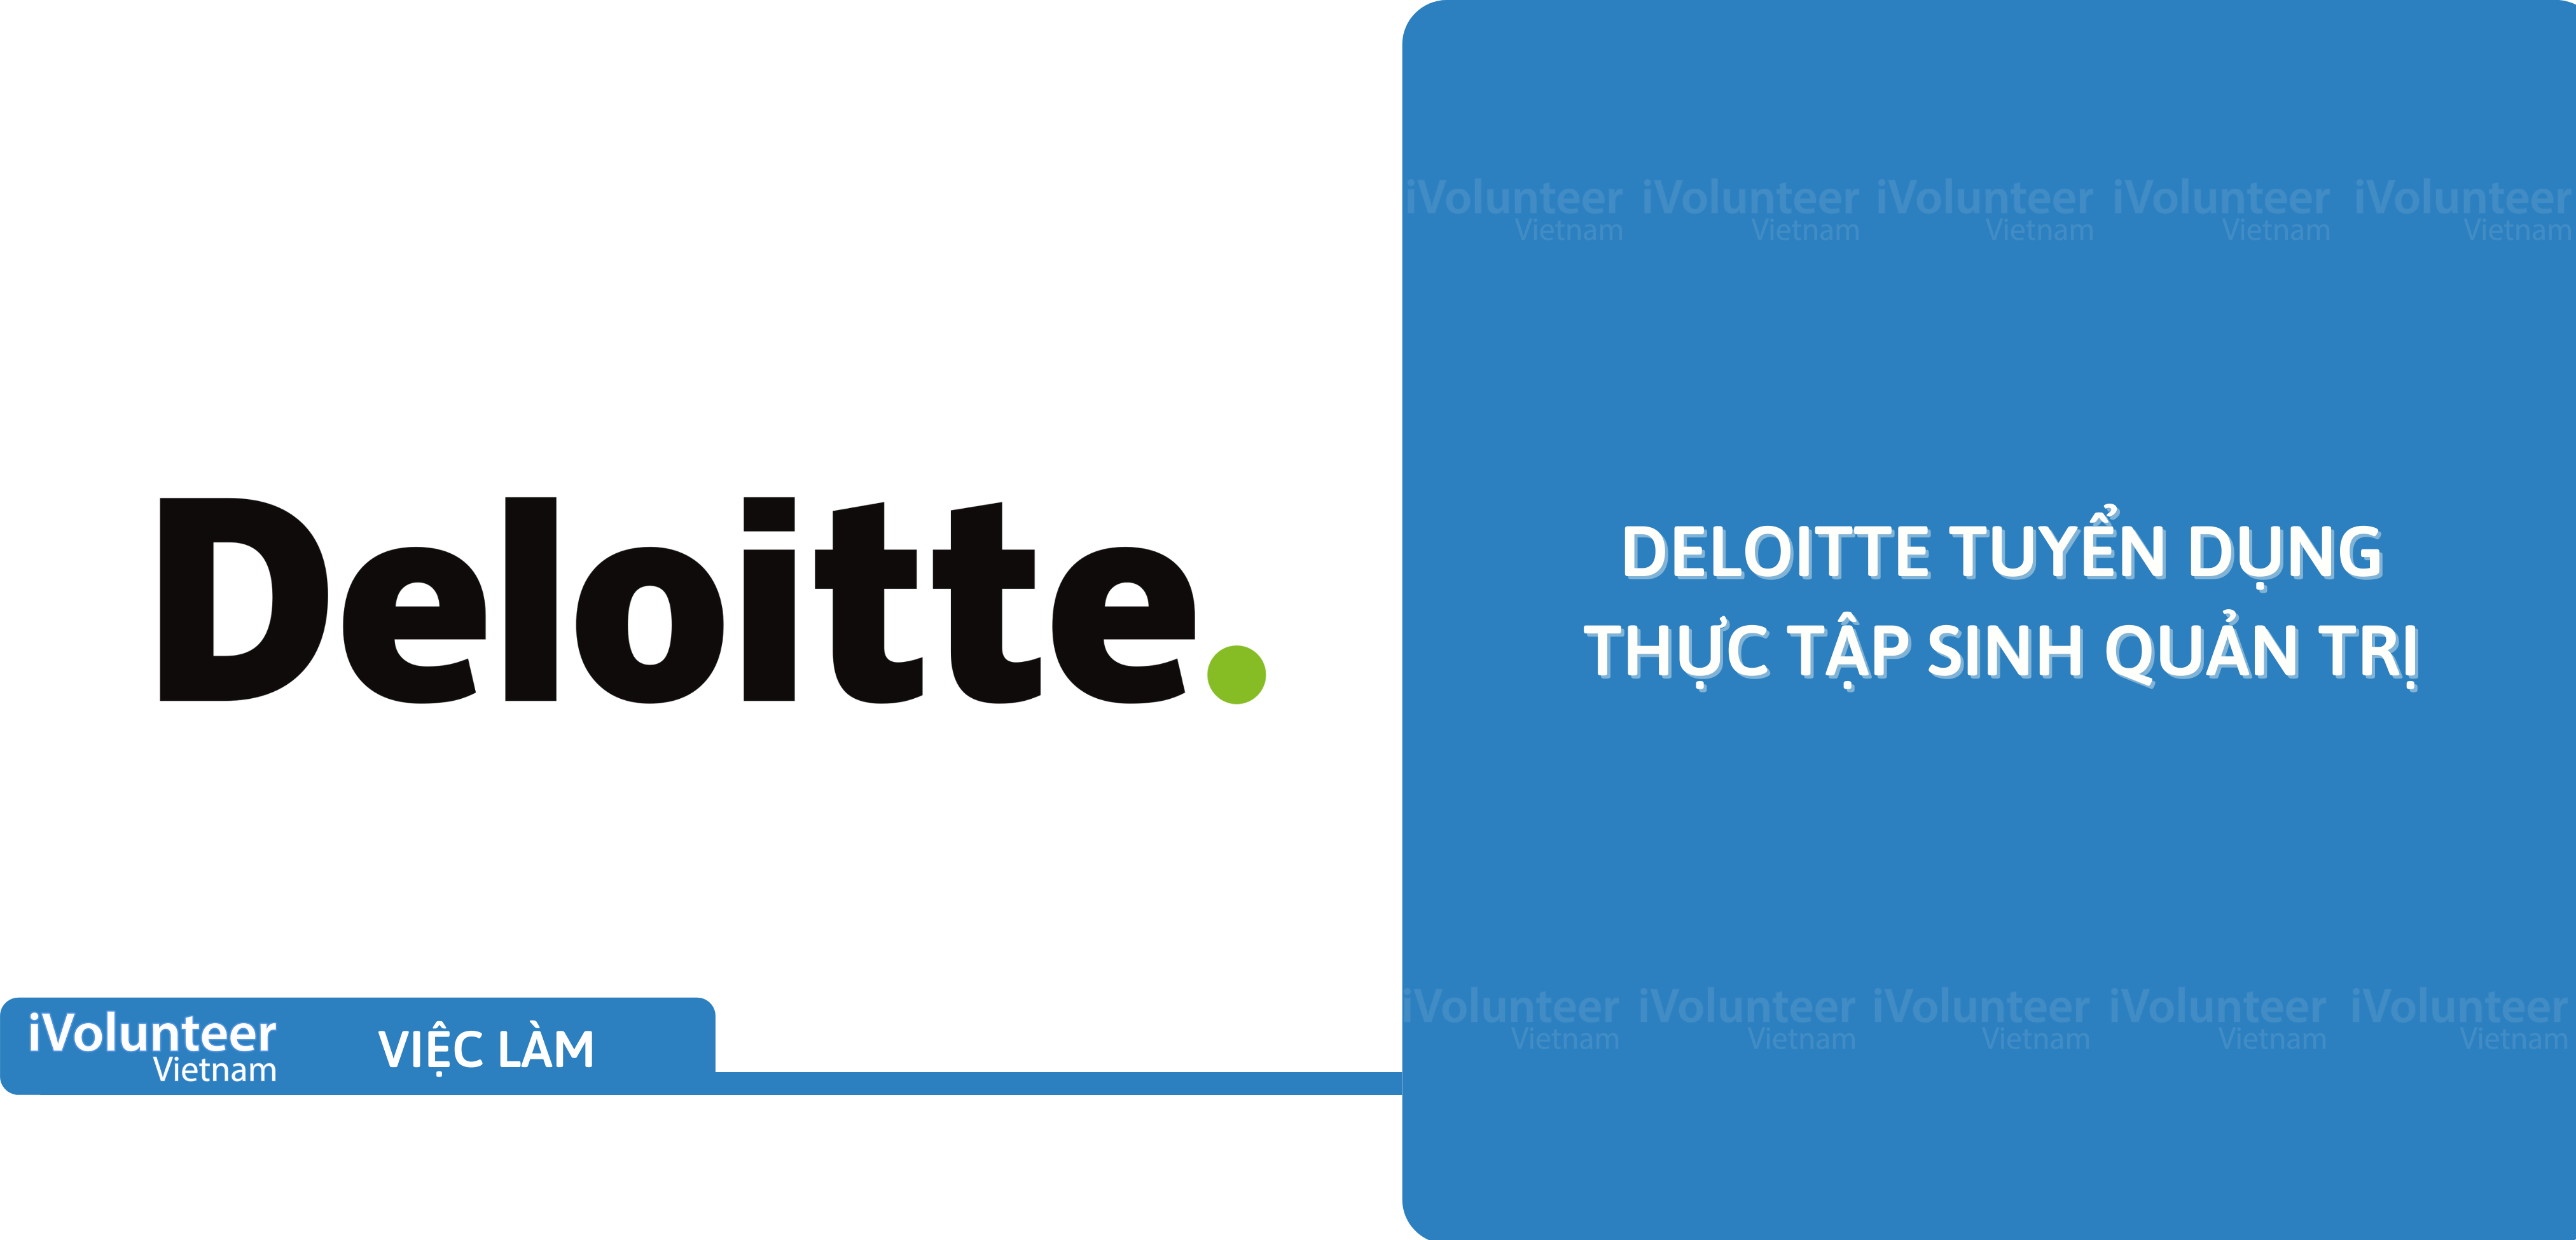 [HN] Deloitte Tuyển Dụng Thực Tập Sinh Quản Trị